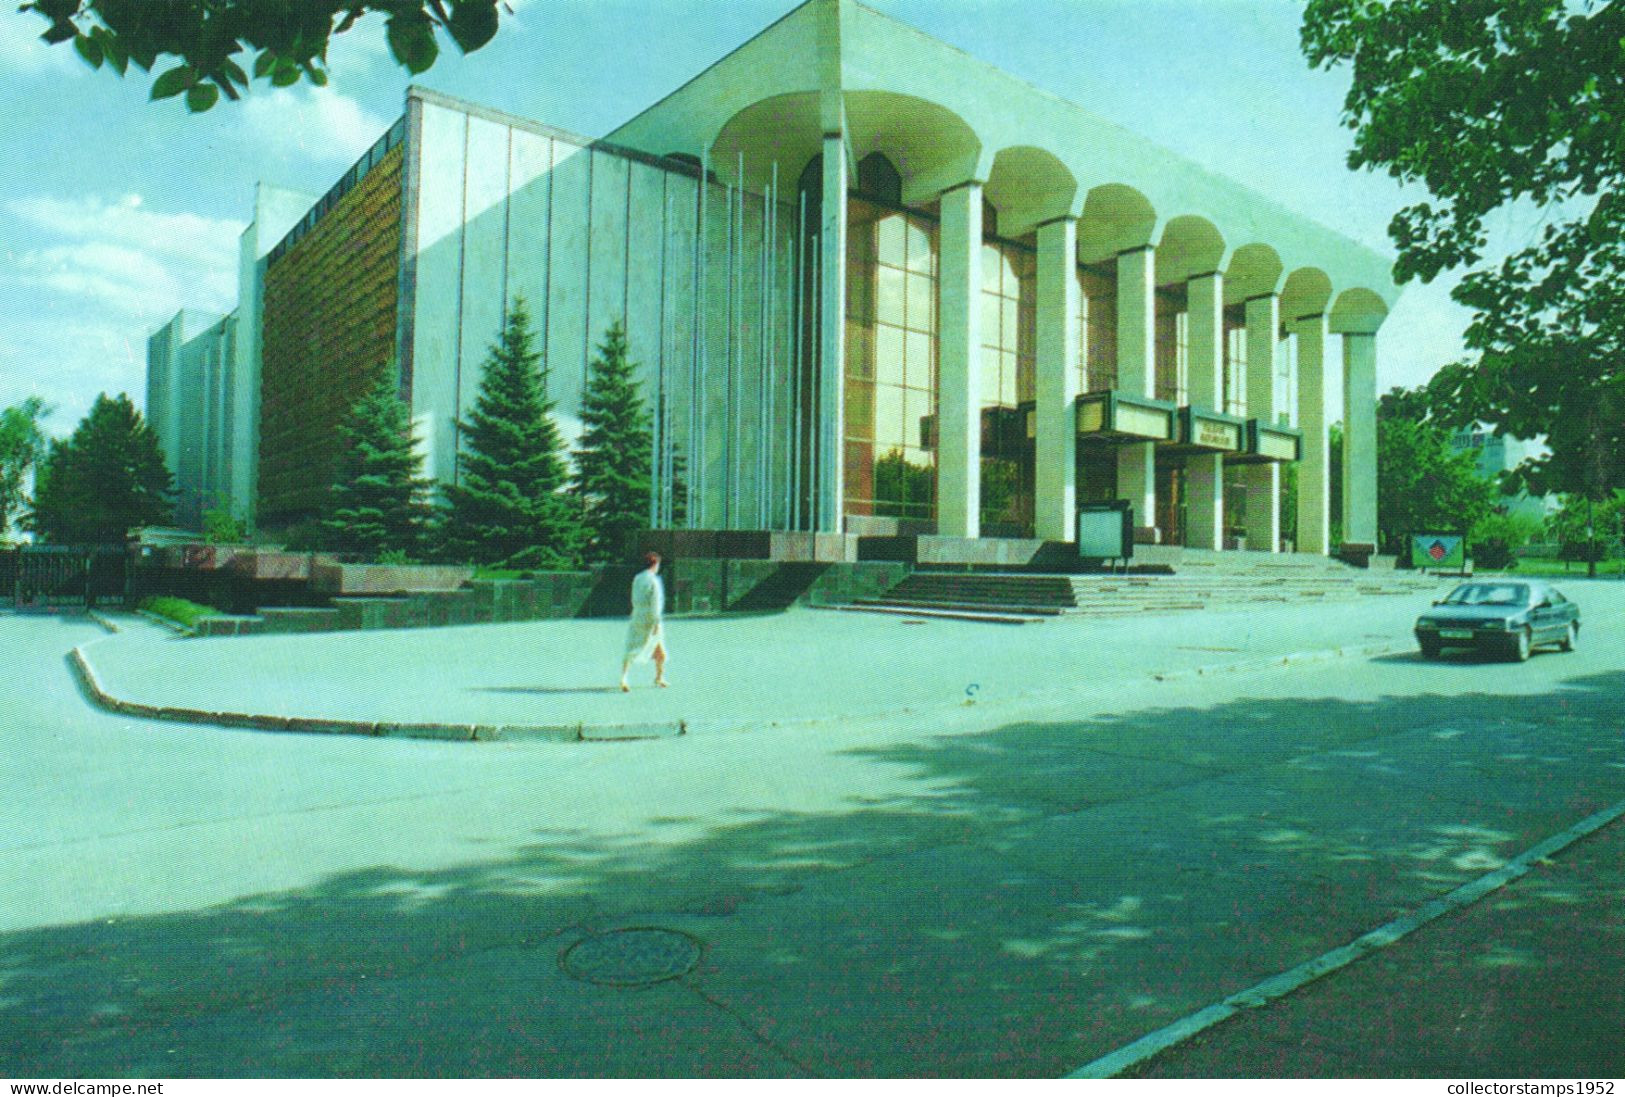 CHISINAU, PALATUL REPUBLICII, ARCHITECTURE, CAR, MOLDOVA - Moldova